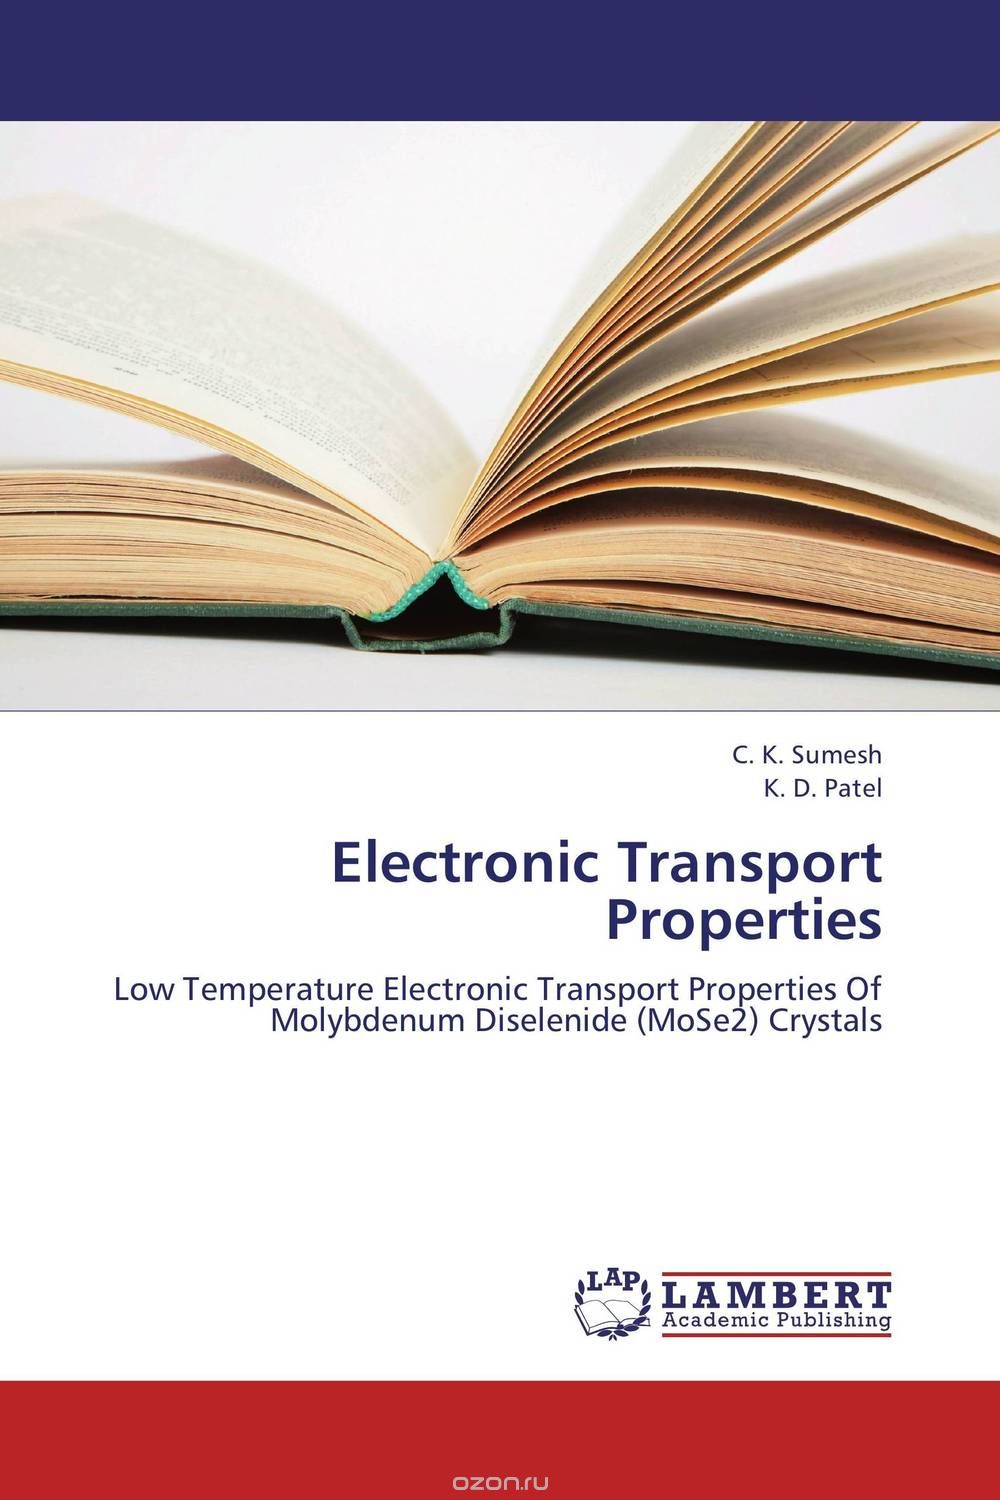 Скачать книгу "Electronic Transport Properties"